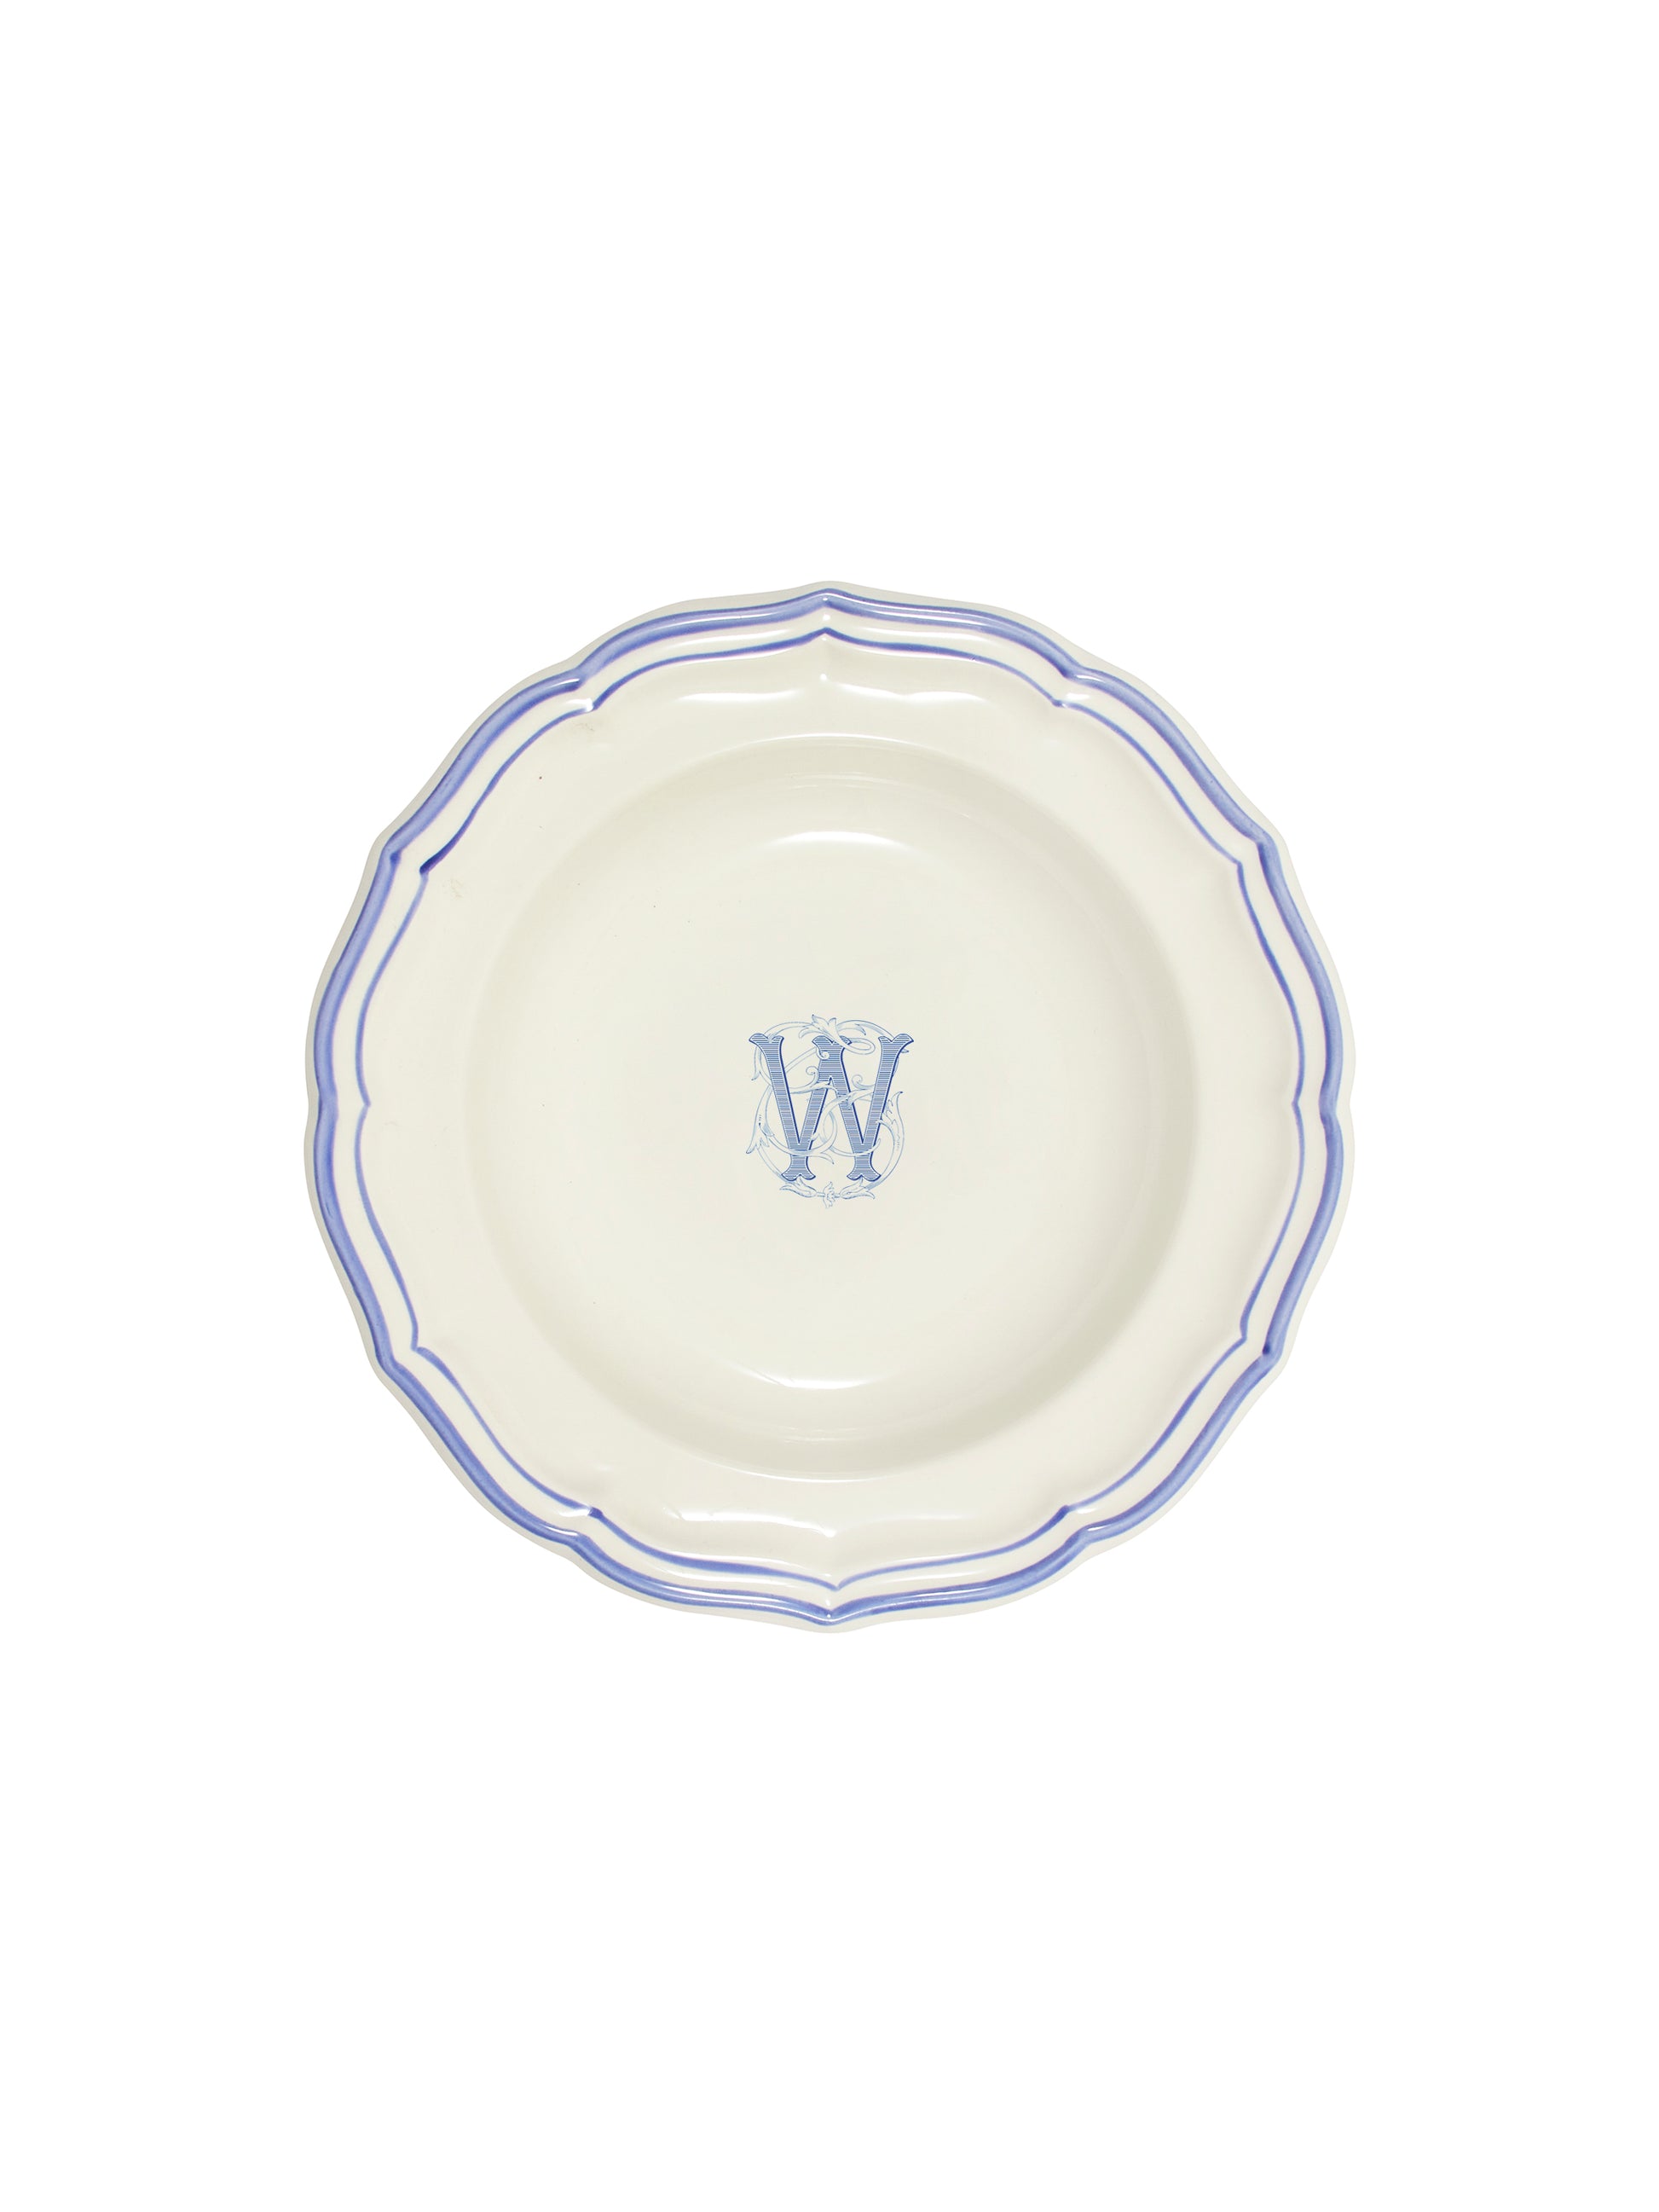 Gien Filet Bleu Monogram Soup Plate W Weston Table